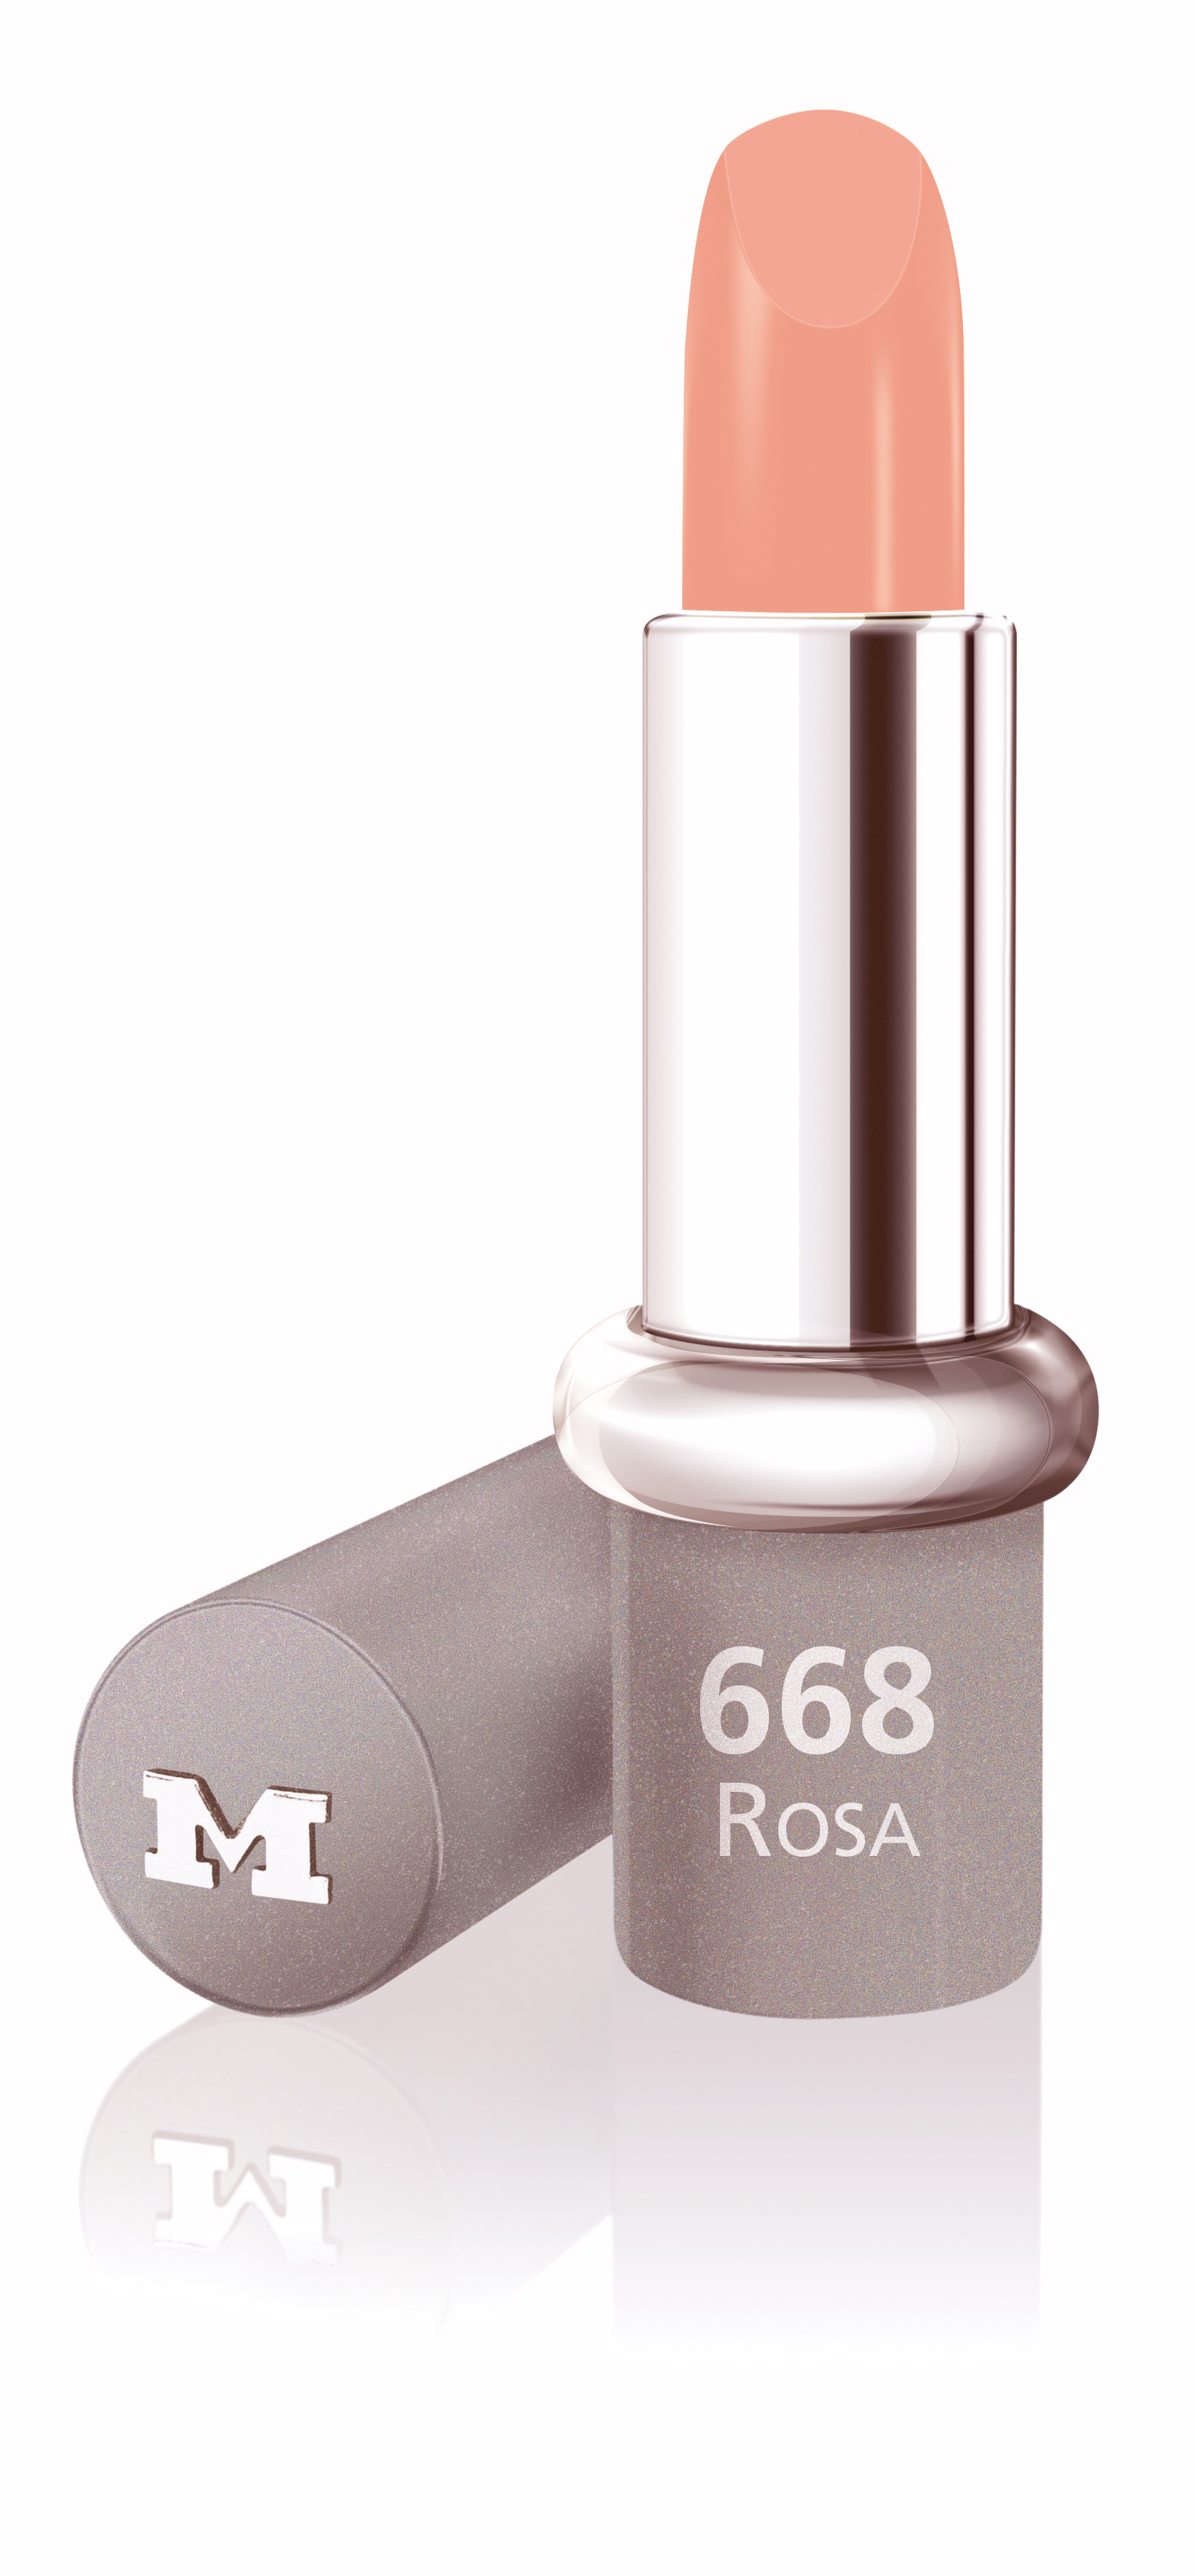 Rosa - MAVALA Lippenstift - Feuchtigkeitsspendend, Satin Effekt, Komfort, Langhaftend    